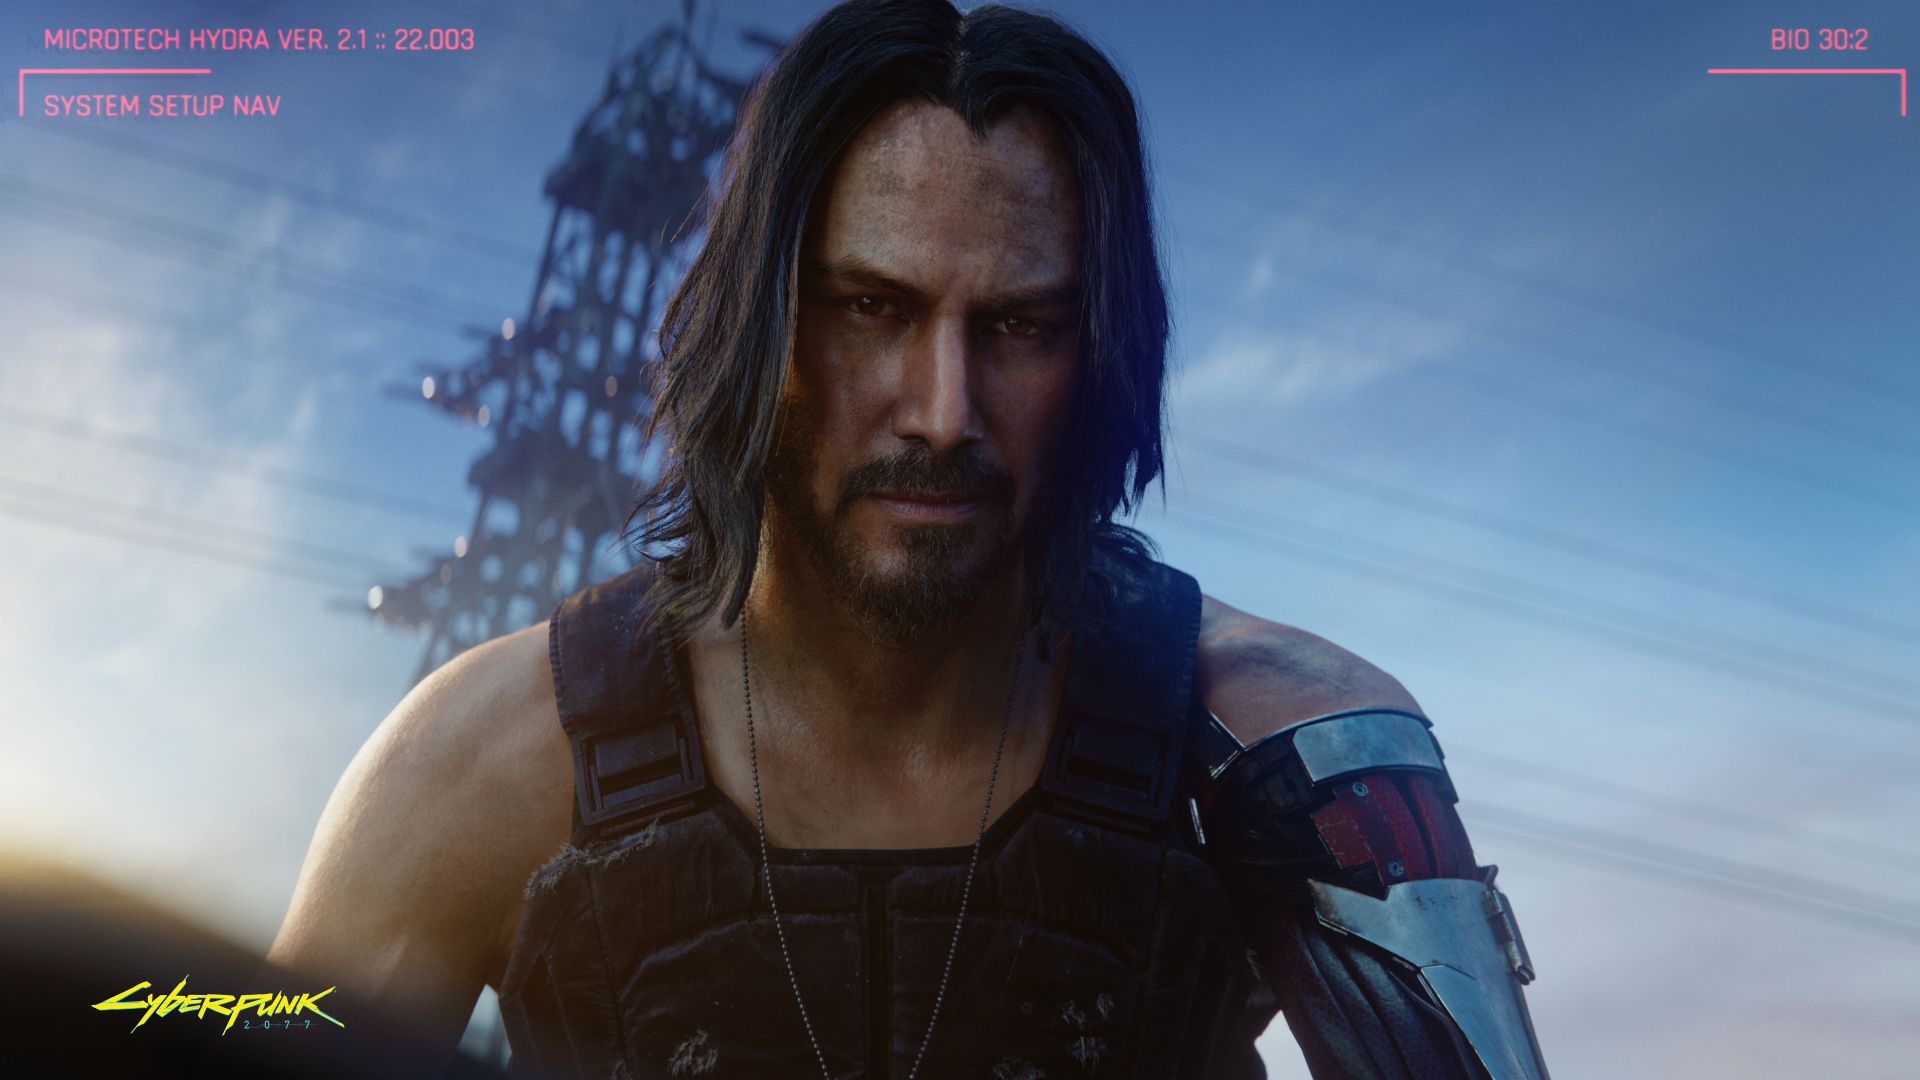 Cyberpunk 2077, Keanu Reeves, E3 2019, screenshot, 4K (horizontal)